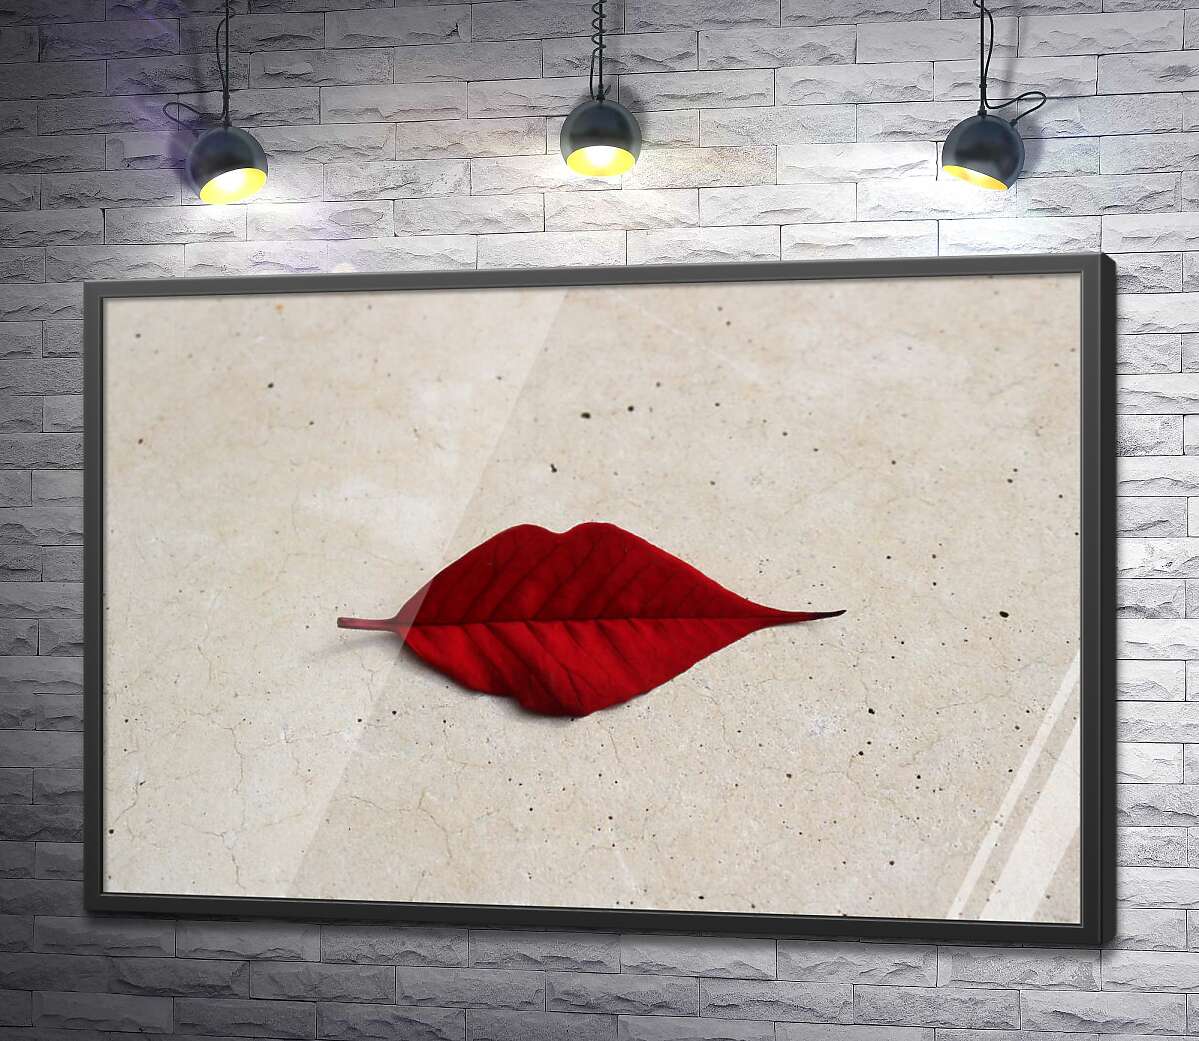 постер Красный листик в форме губок лежит на мраморном полу